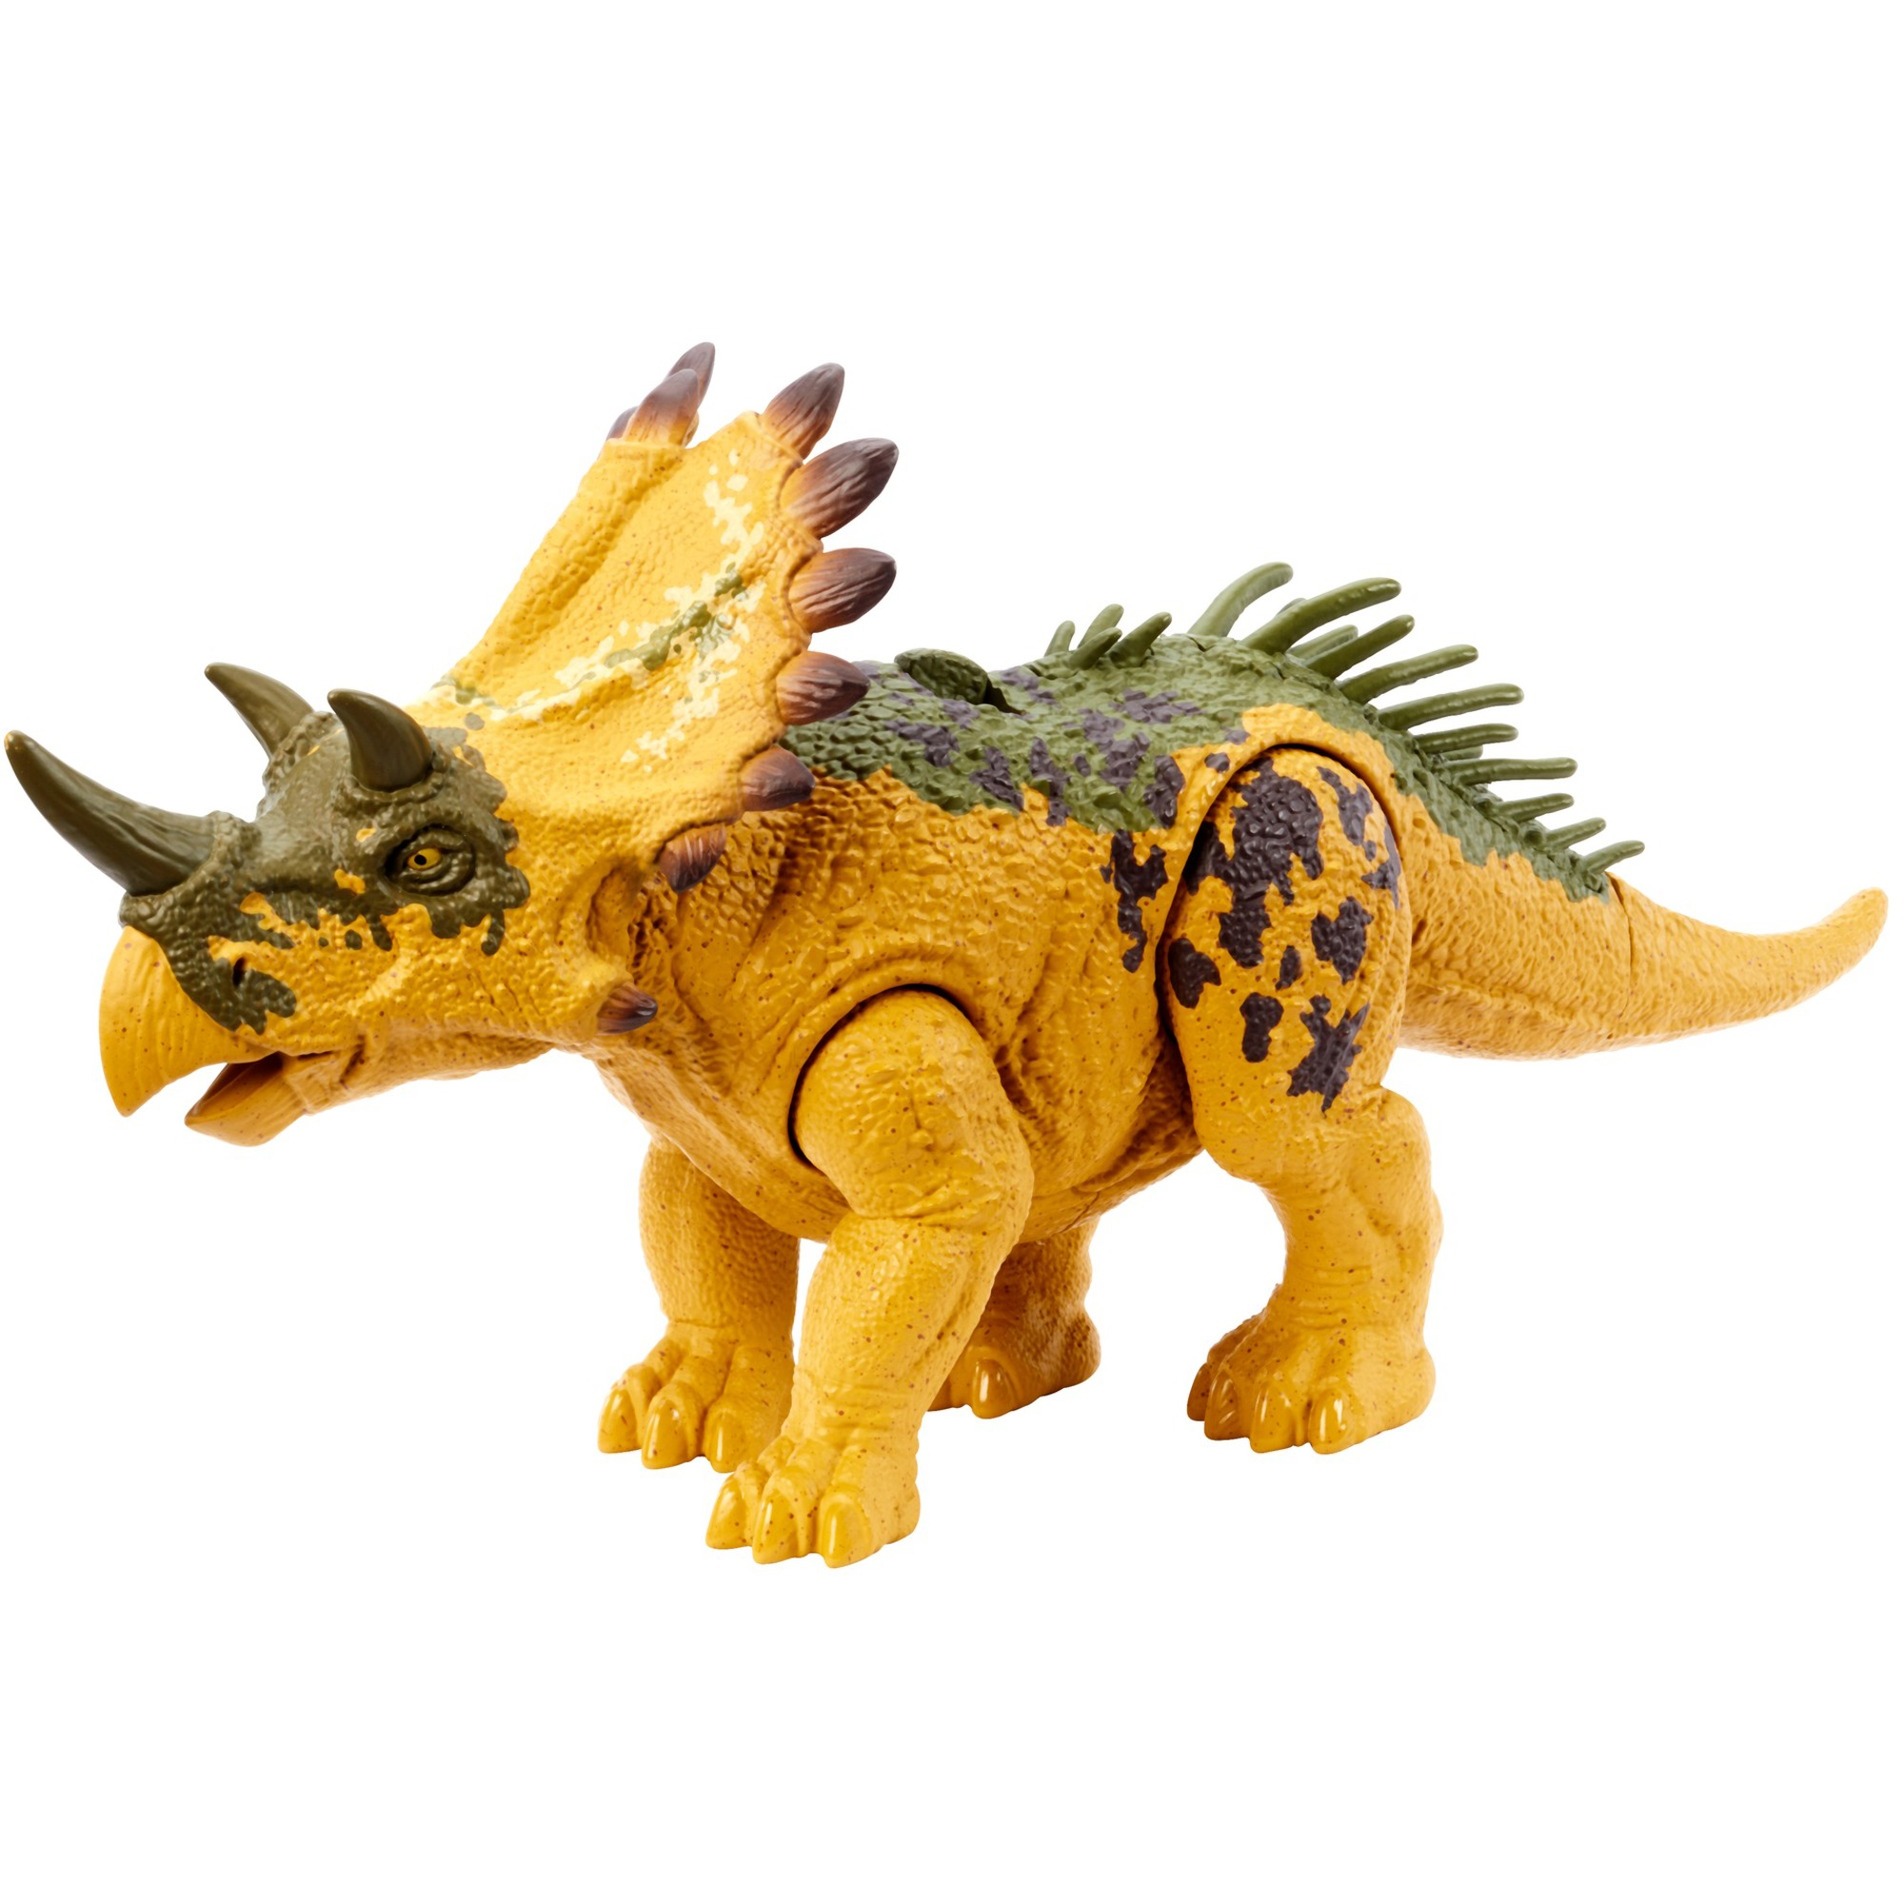 Jurassic World Dinosaurier-Spielzeuge mit Brüllgeräusch und Angriffsbewegung, bewegliche Wild Roar-Figuren, physisches und vernetztes digitales Spiel - HLP19